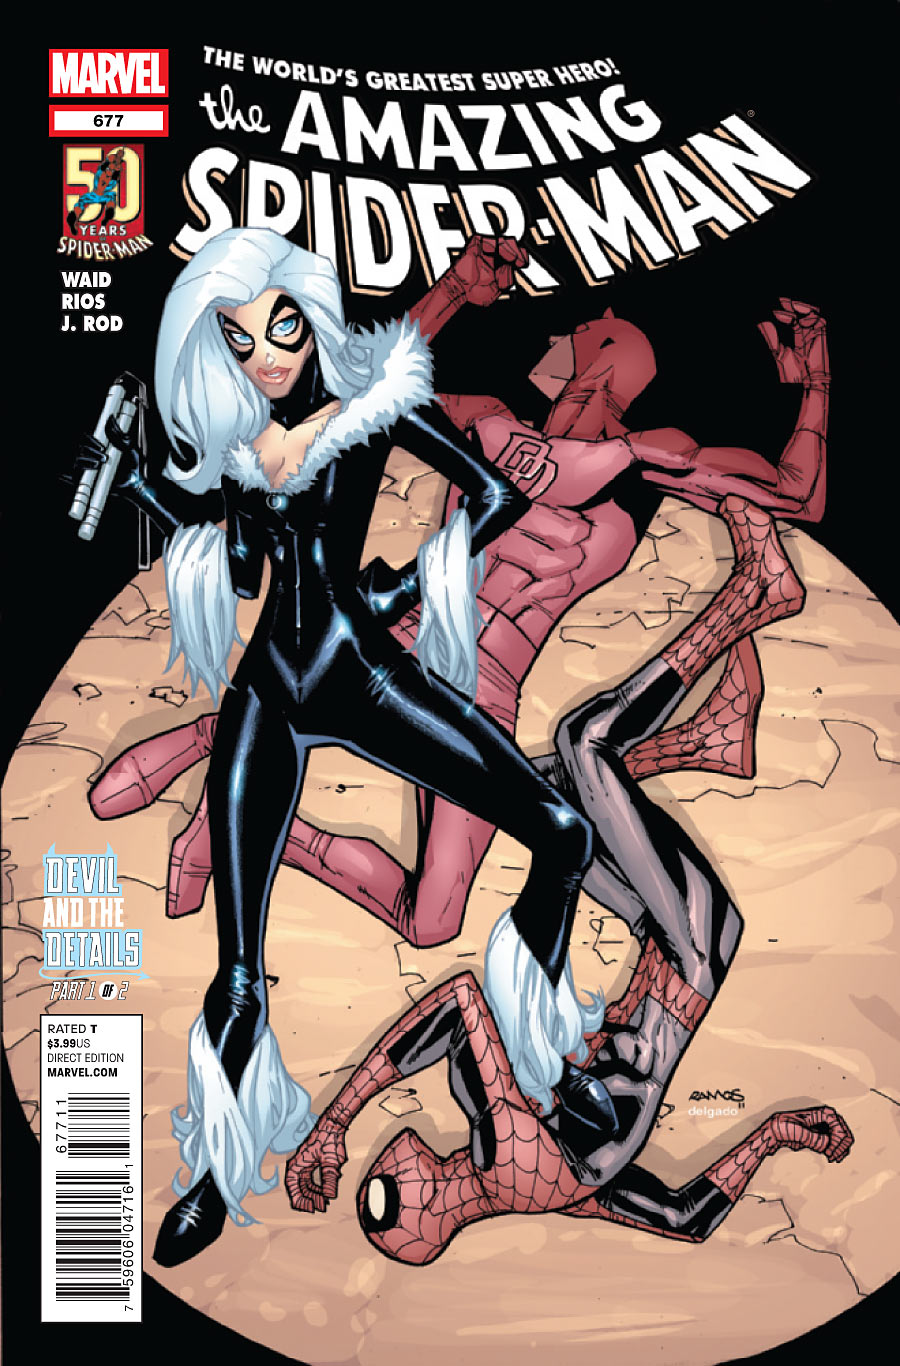 Amazing Spider-Man Vol. 1 #677